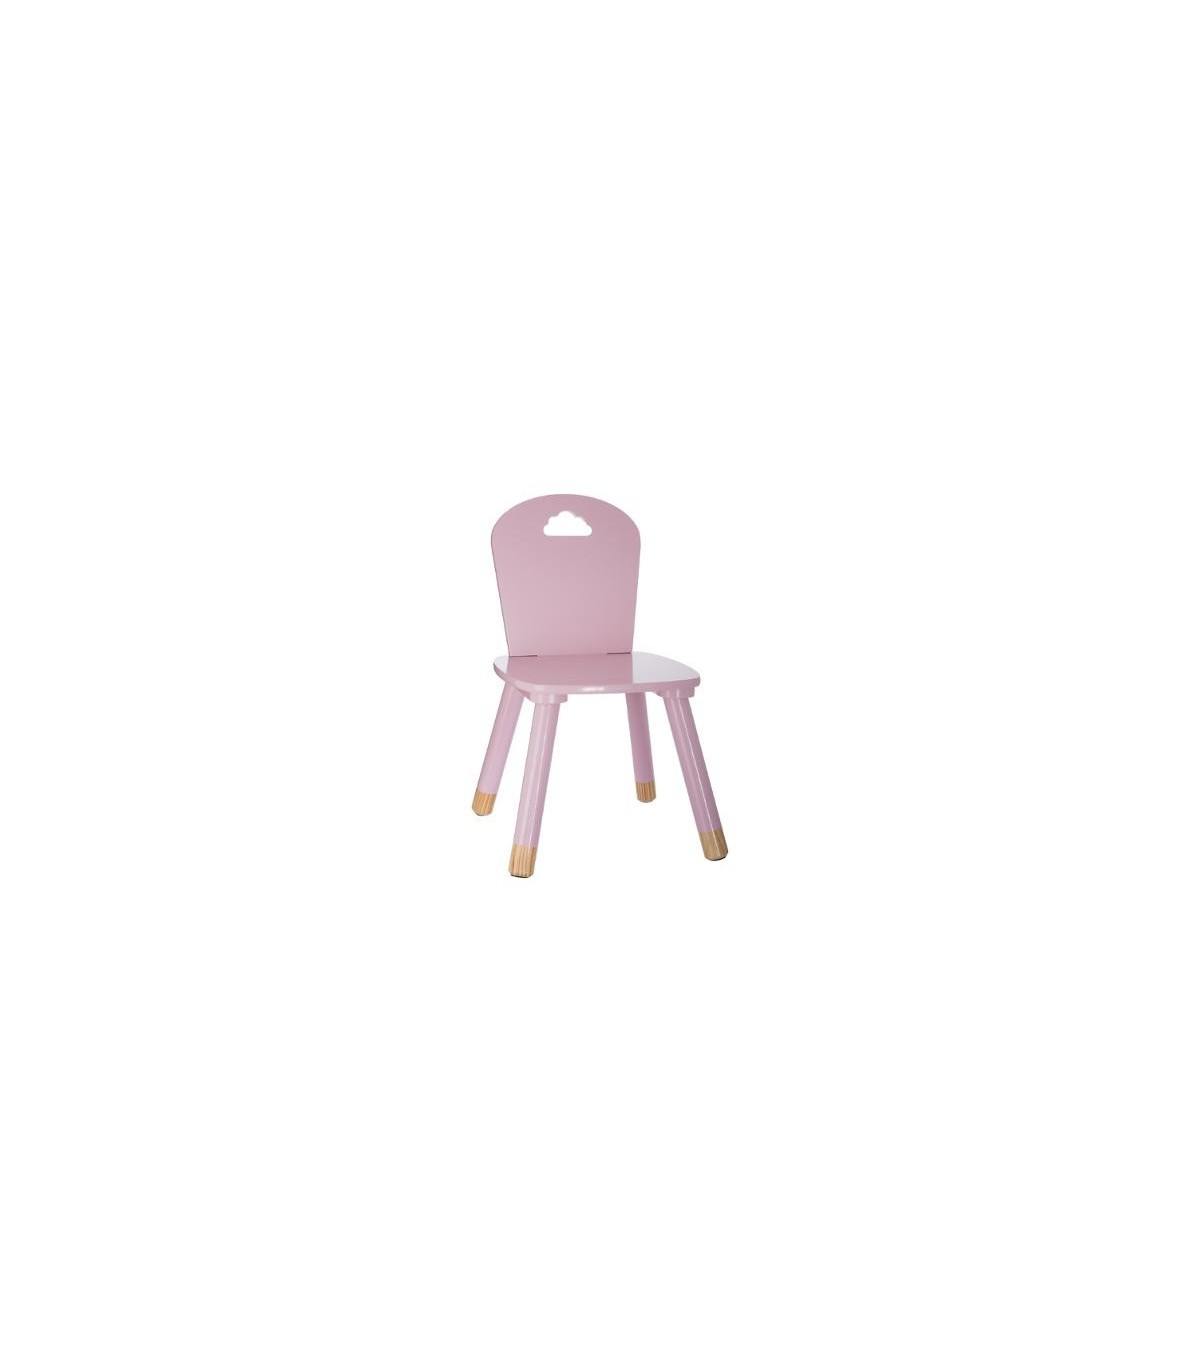 Mesas y sillas infantiles Nube - Envío Rápido y Gratuito